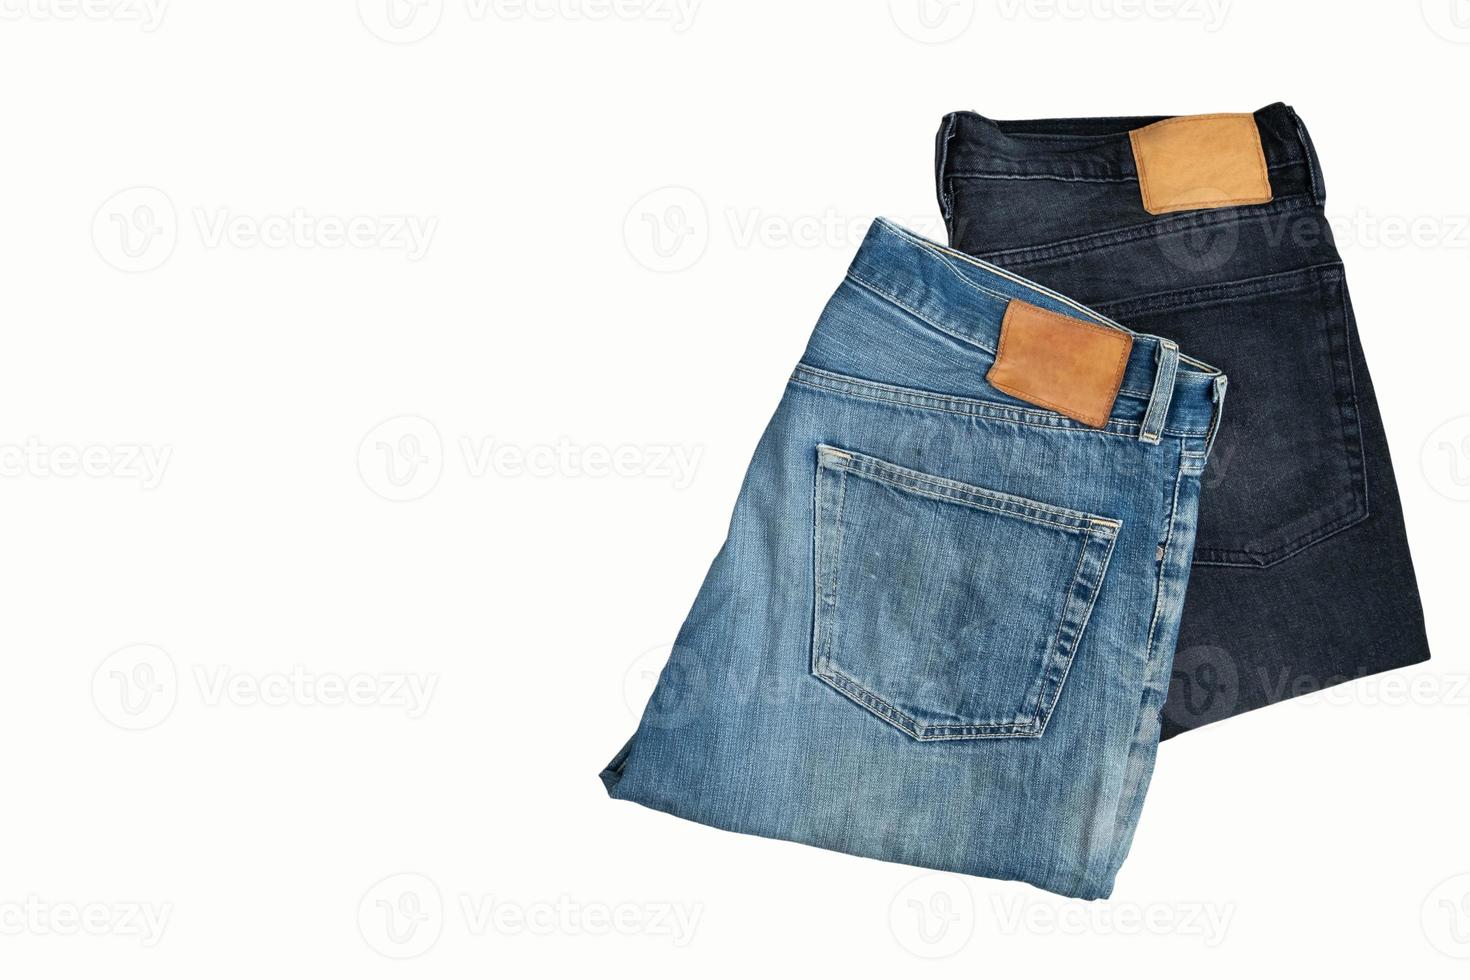 vikta jeansbyxor, blå och svarta jeans isolerad på vit bakgrund. foto